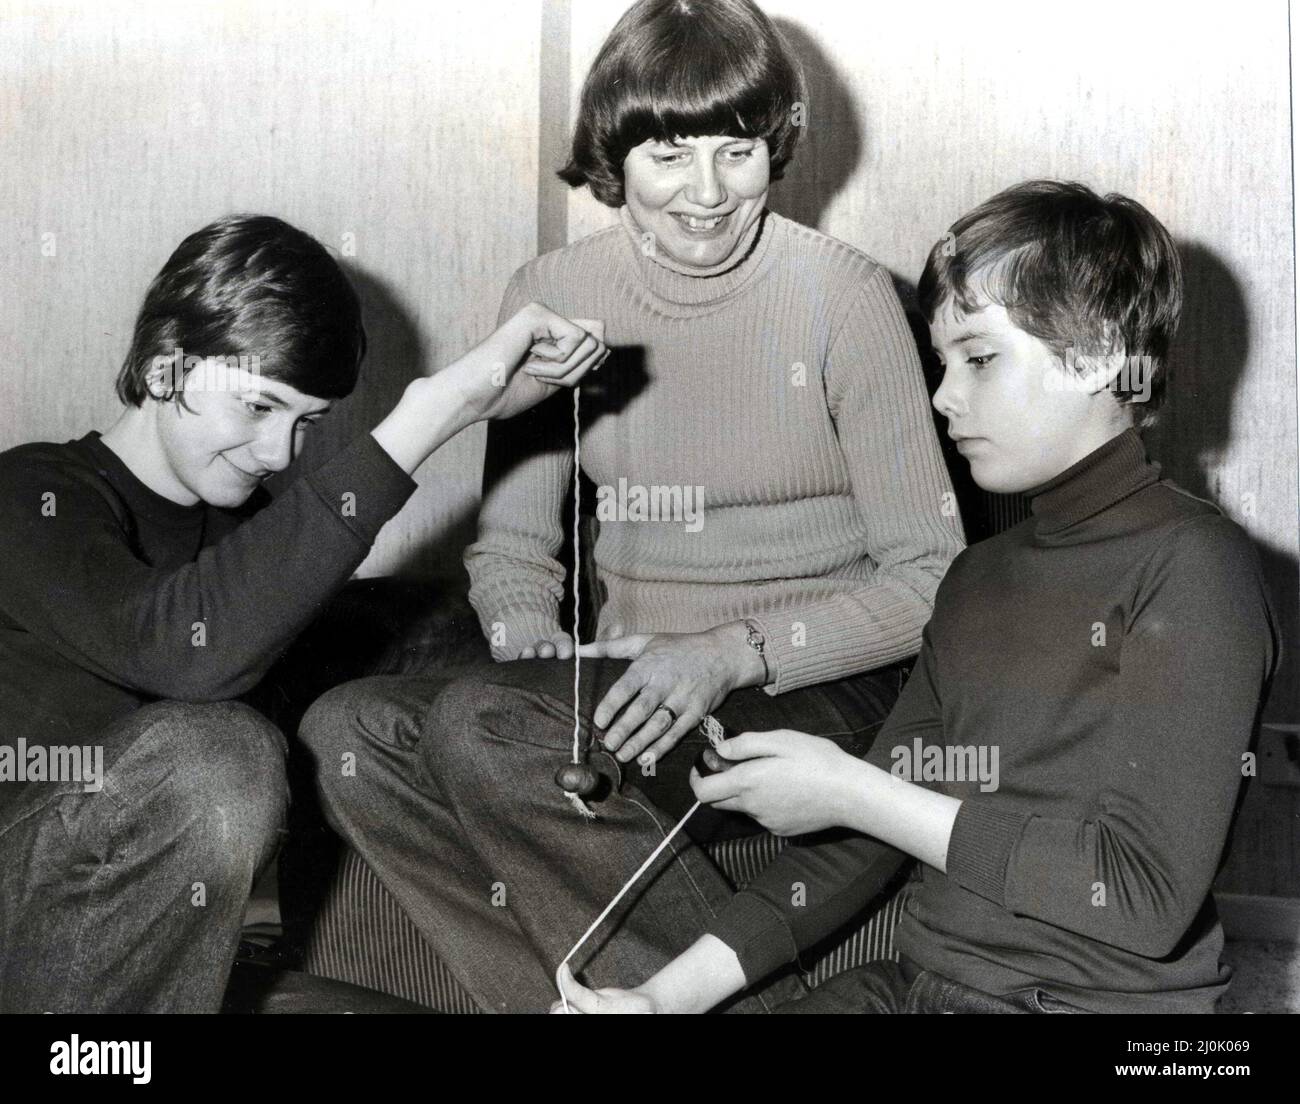 Conkers - Mme Caryl Roach, de Lakeside, Cardiff, avec ses fils conkers, David (à gauche) et Paul. 29th octobre 1980. Banque D'Images